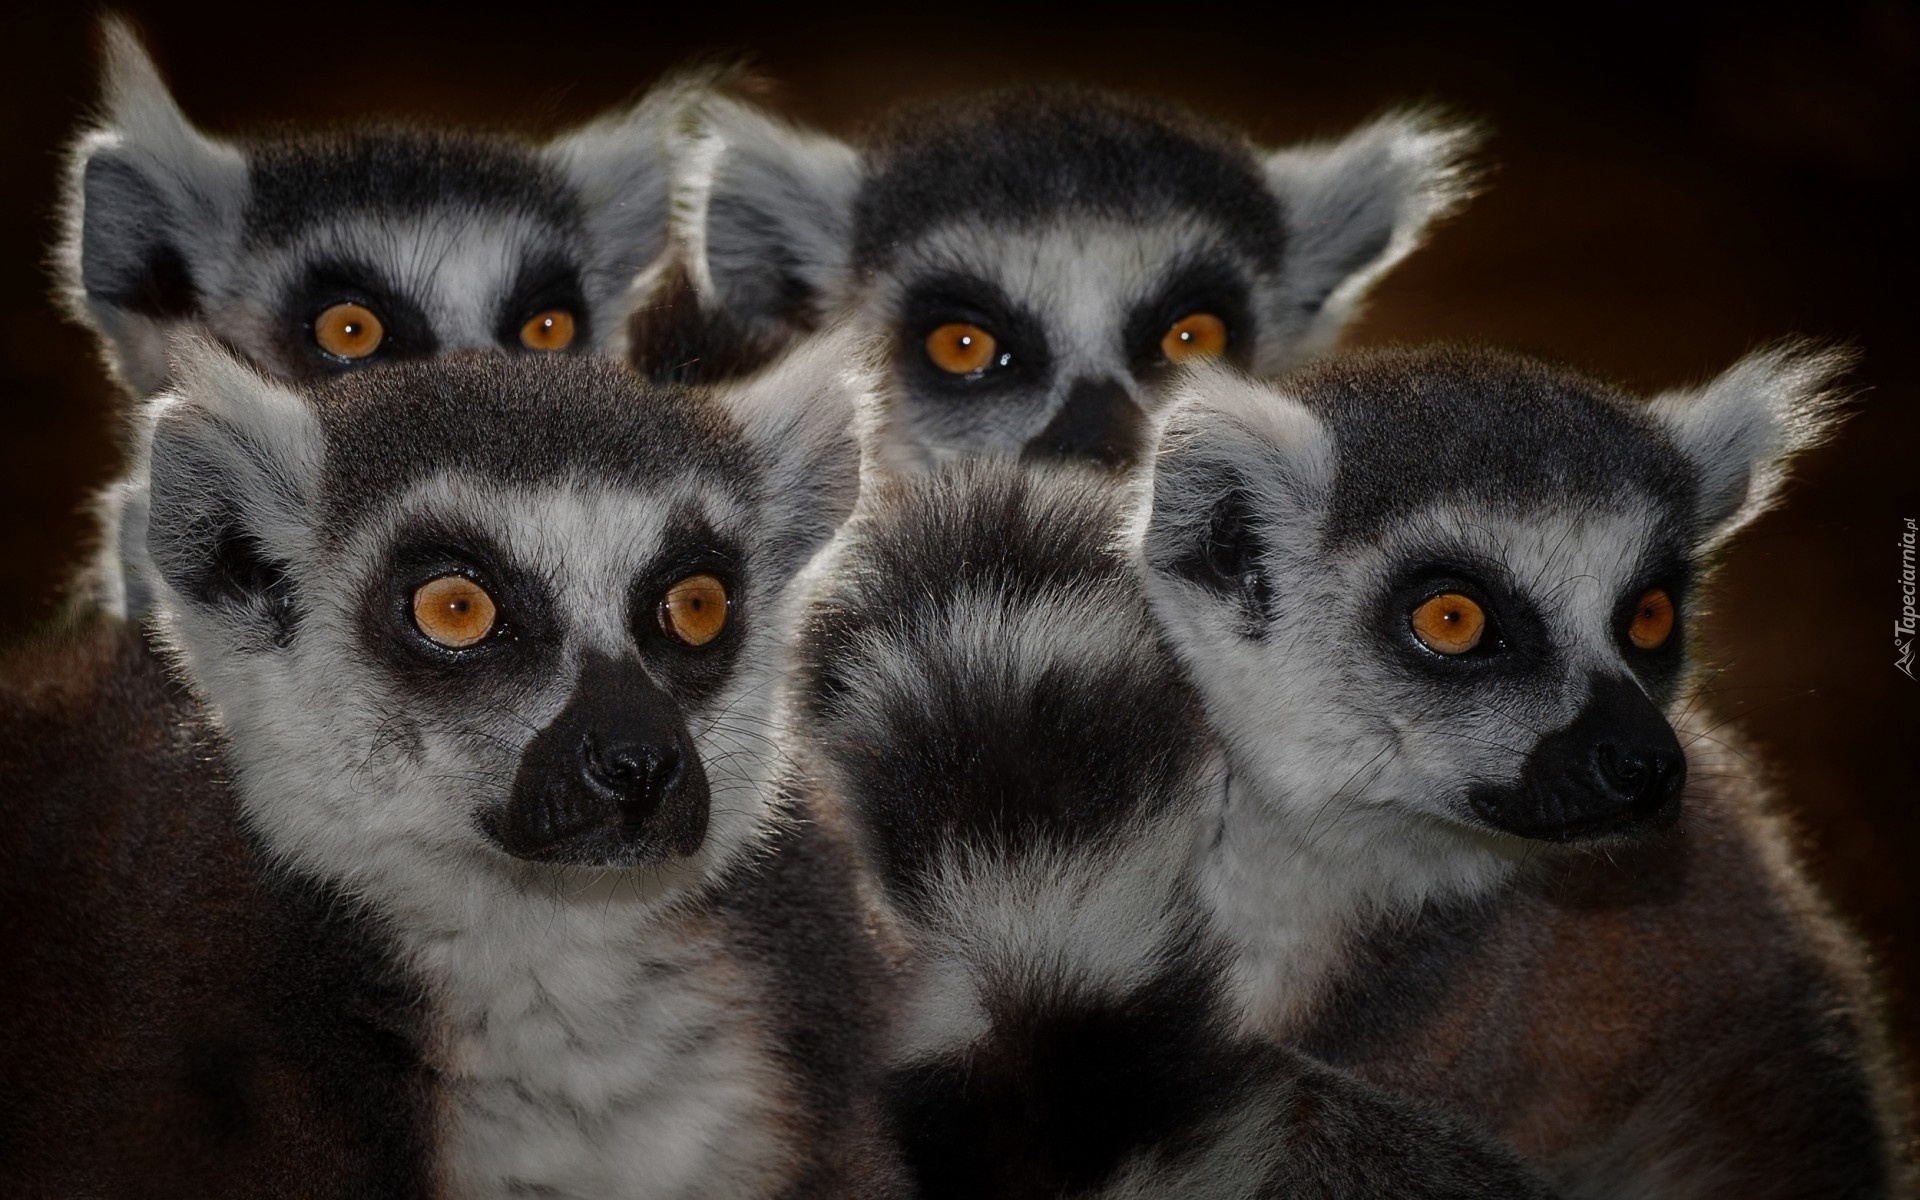 Rodzina, Lemurów